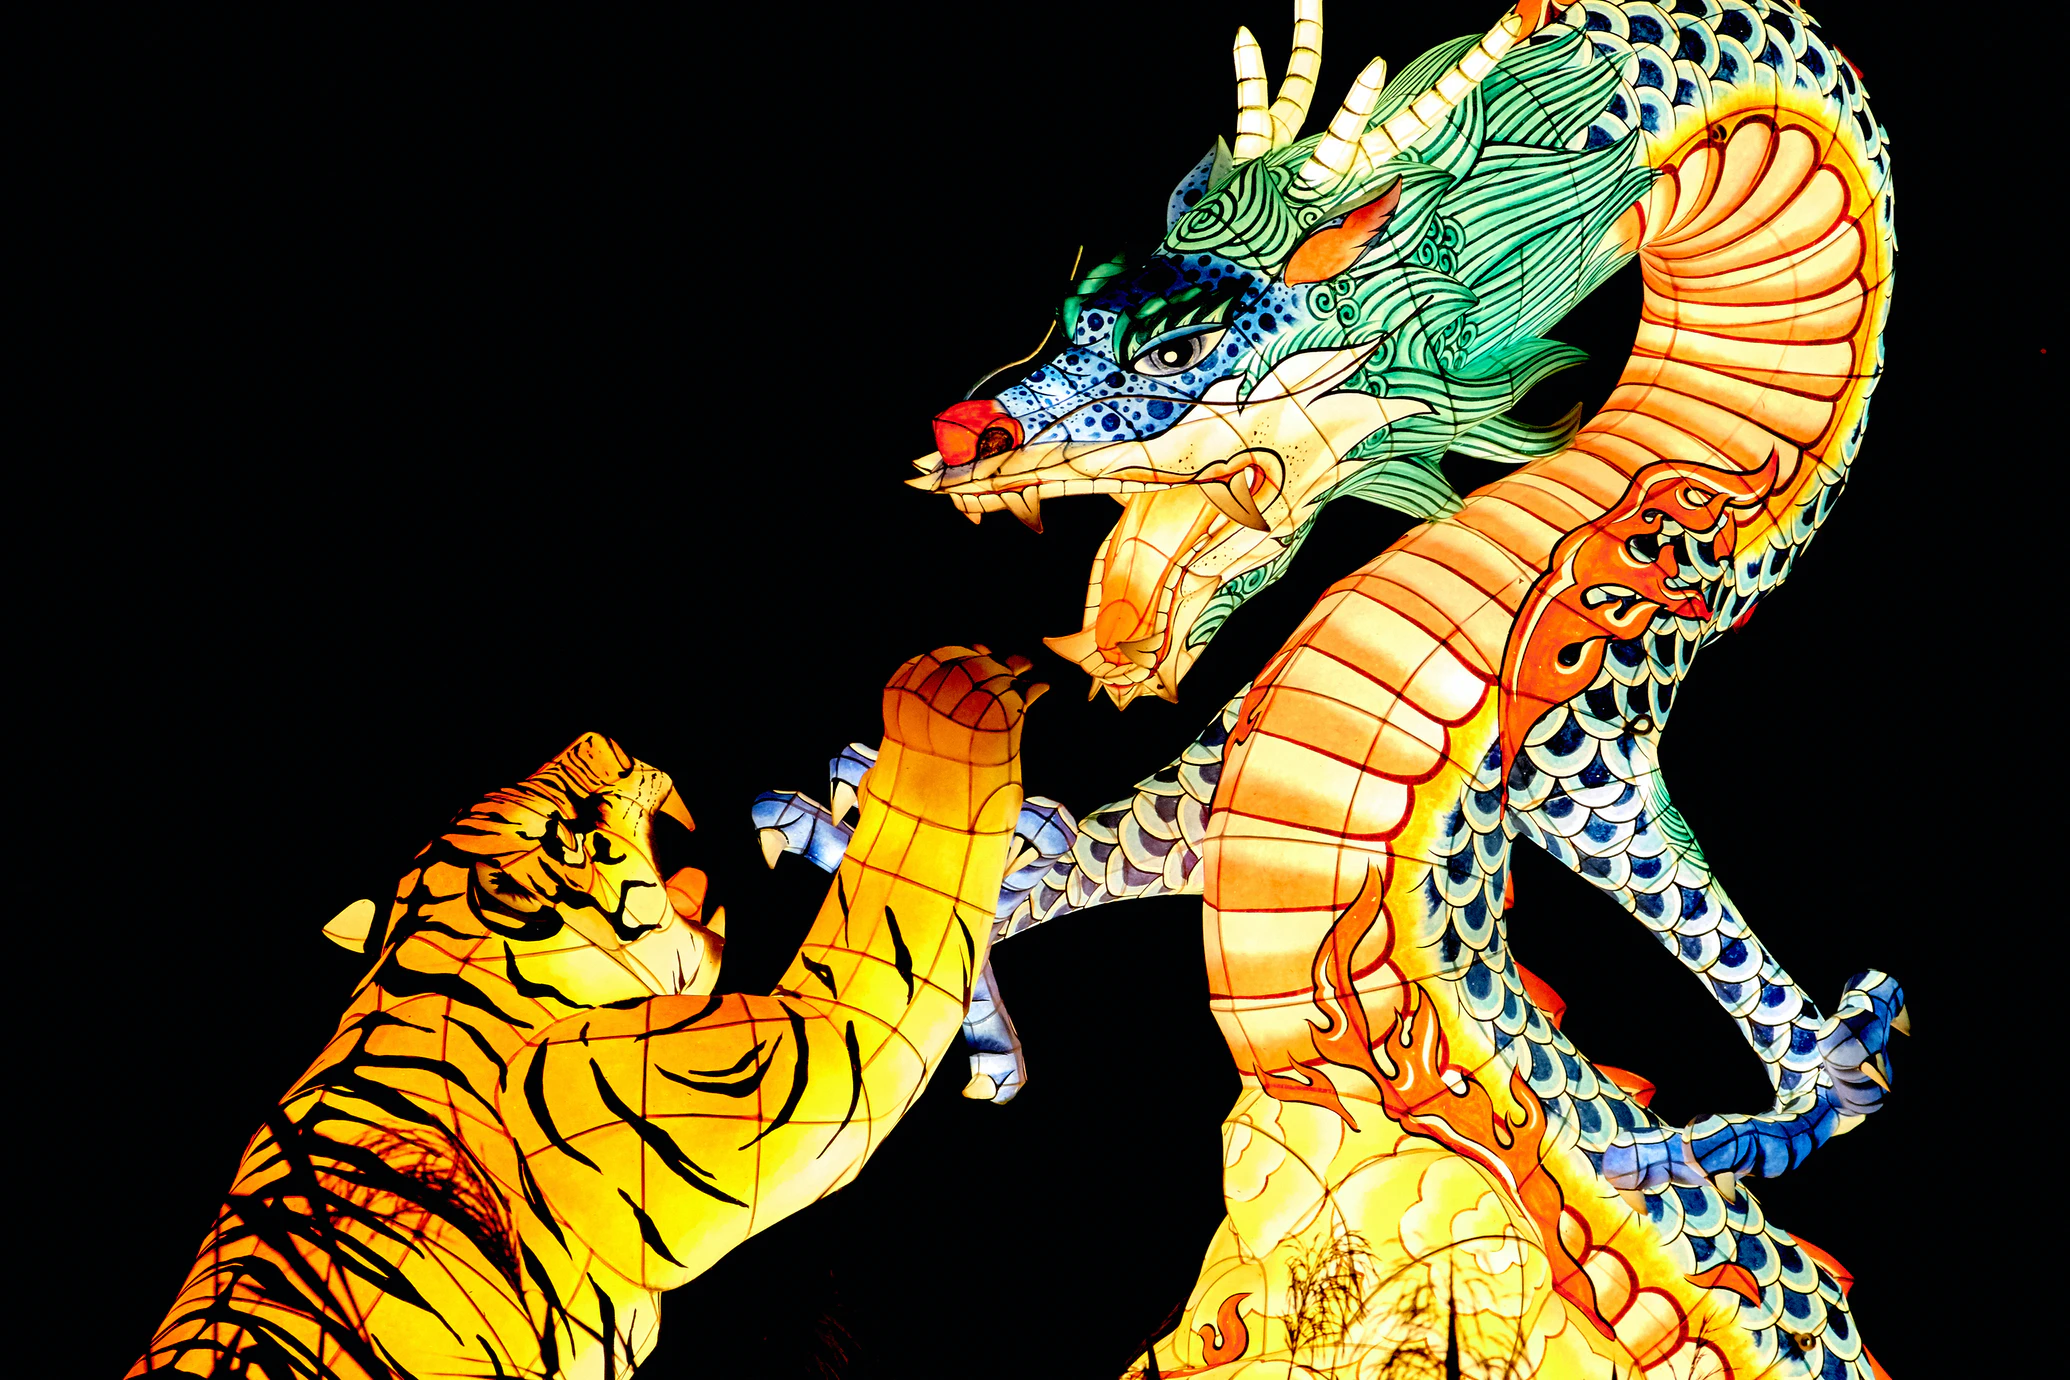 Sonhar com dragão: significado e simbolismo